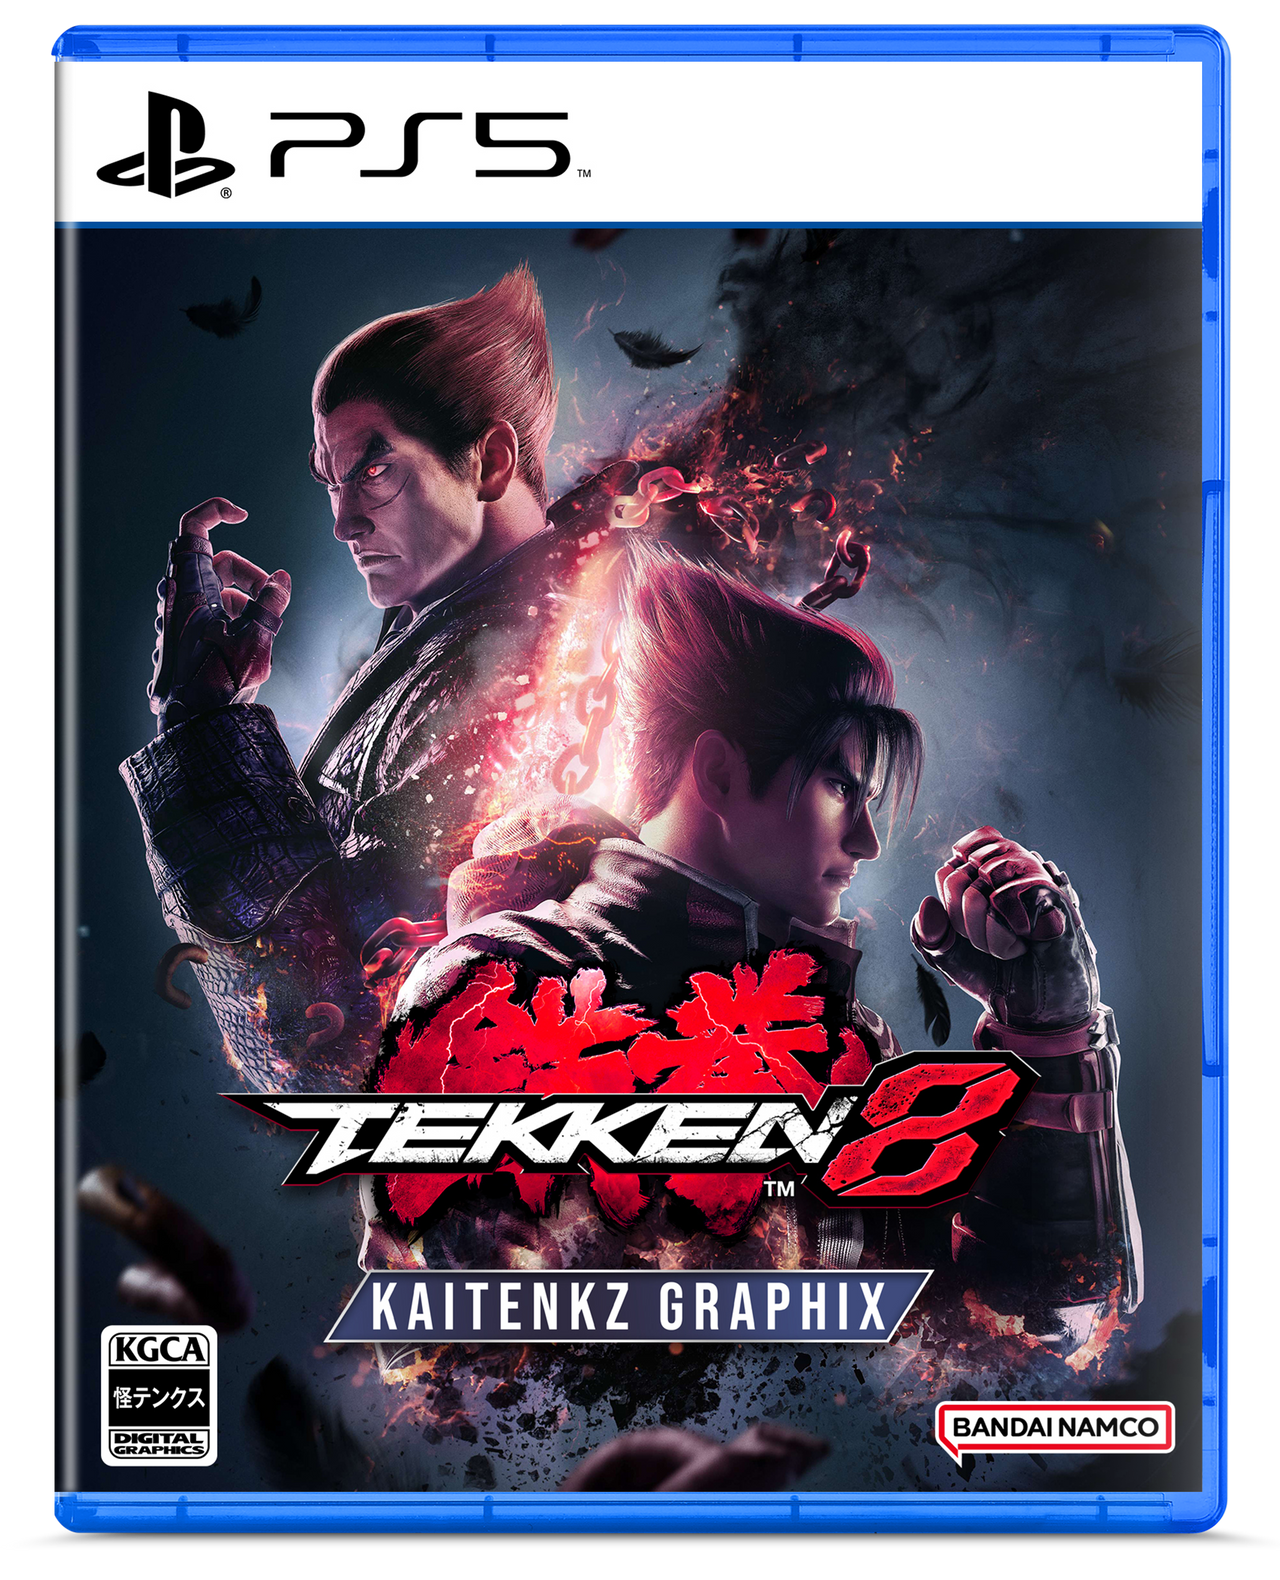 Tekken 8+Ray Tracing : r/Tekken